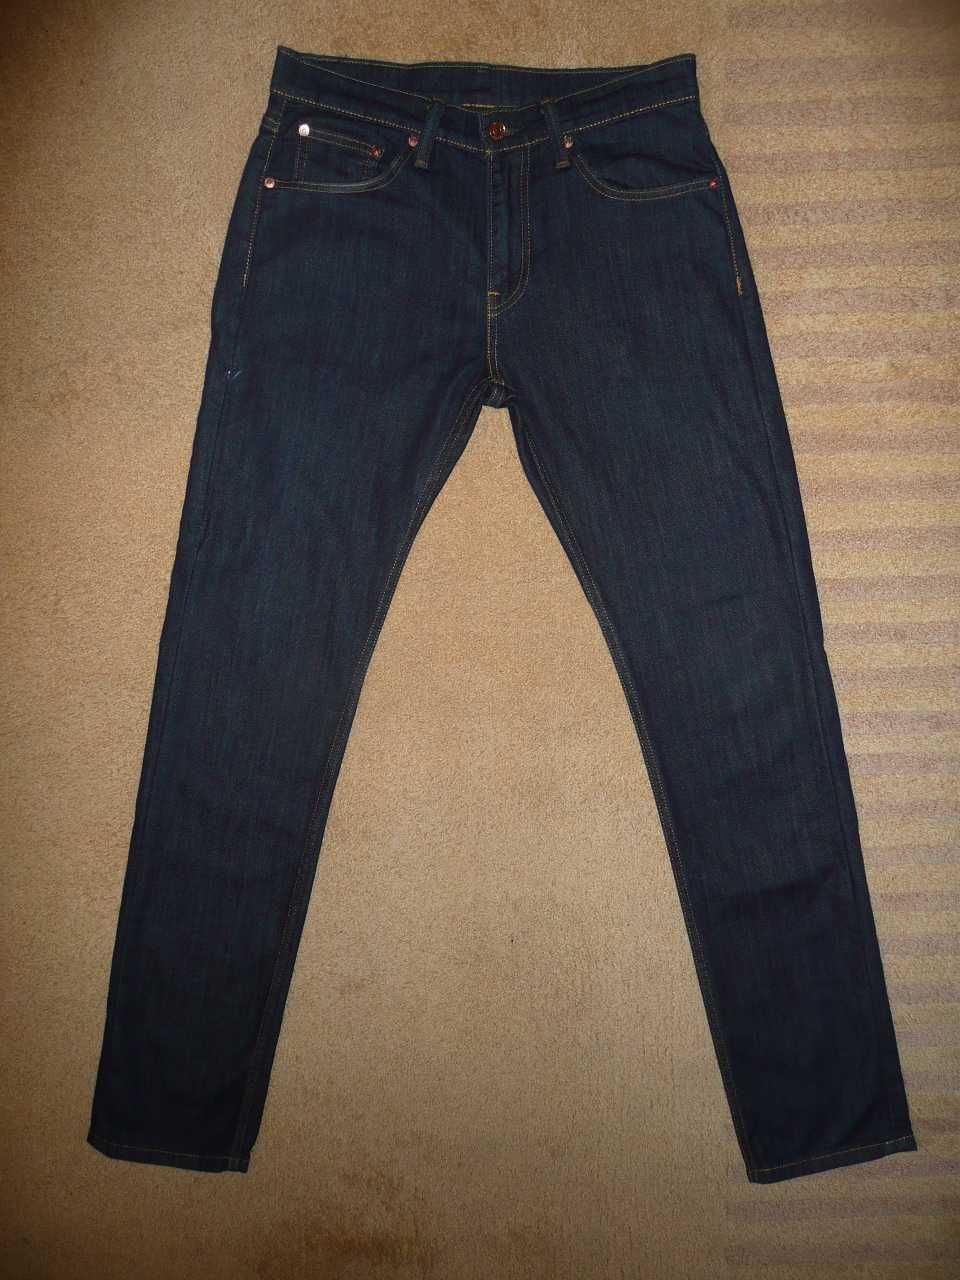 Spodnie dżinsy LEVIS 508 W29/L34=40,5/109cm jeansy